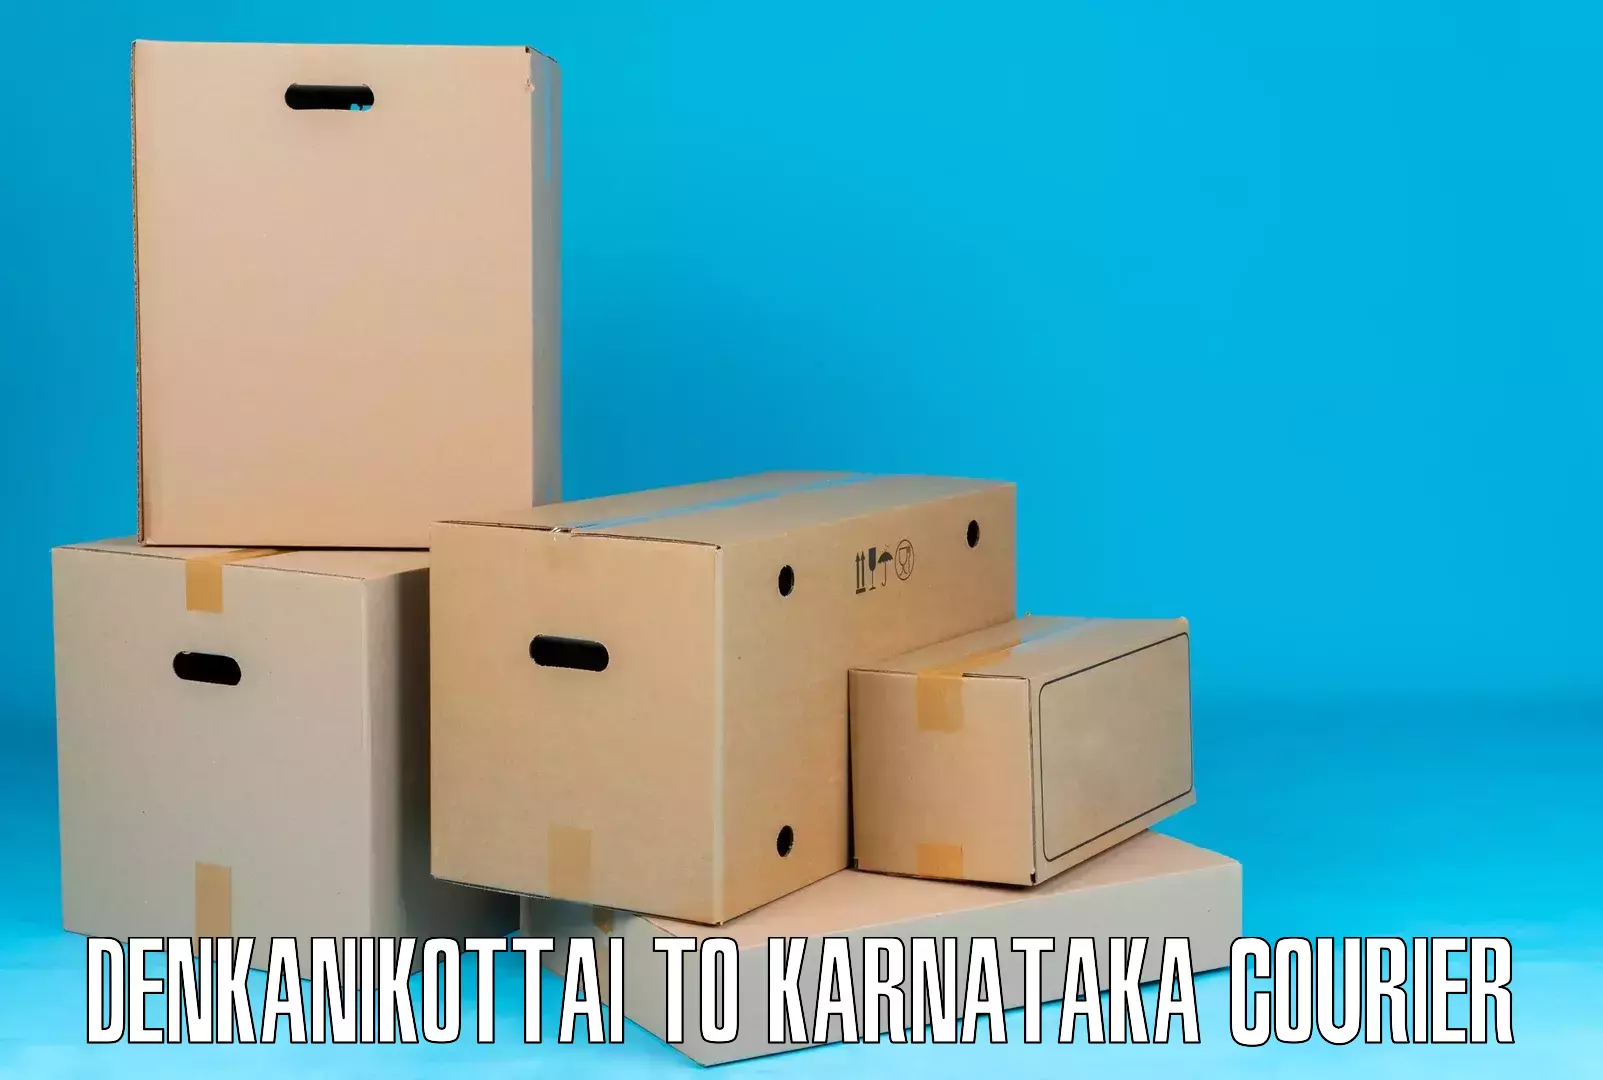 Tailored delivery services Denkanikottai to Sandur